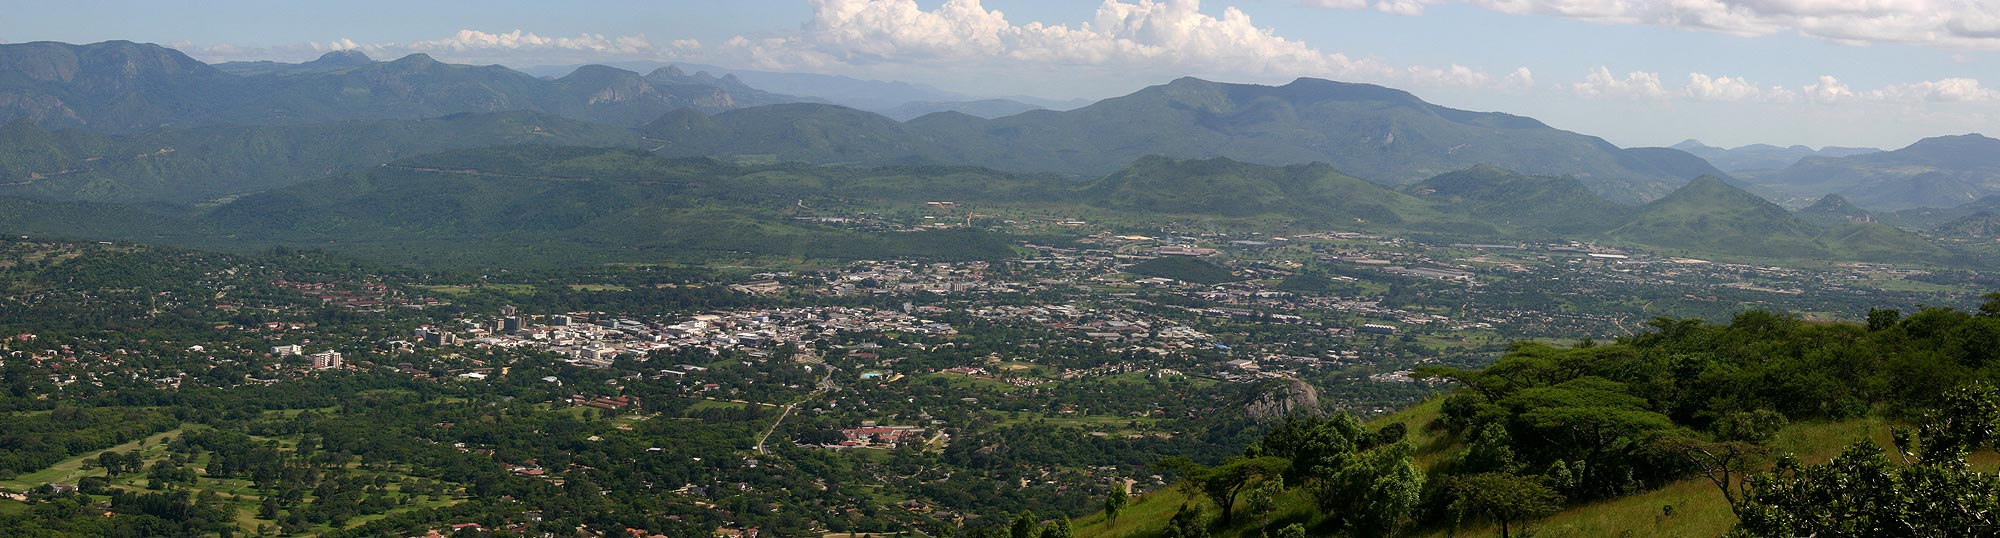 Panoramic view of Mutare